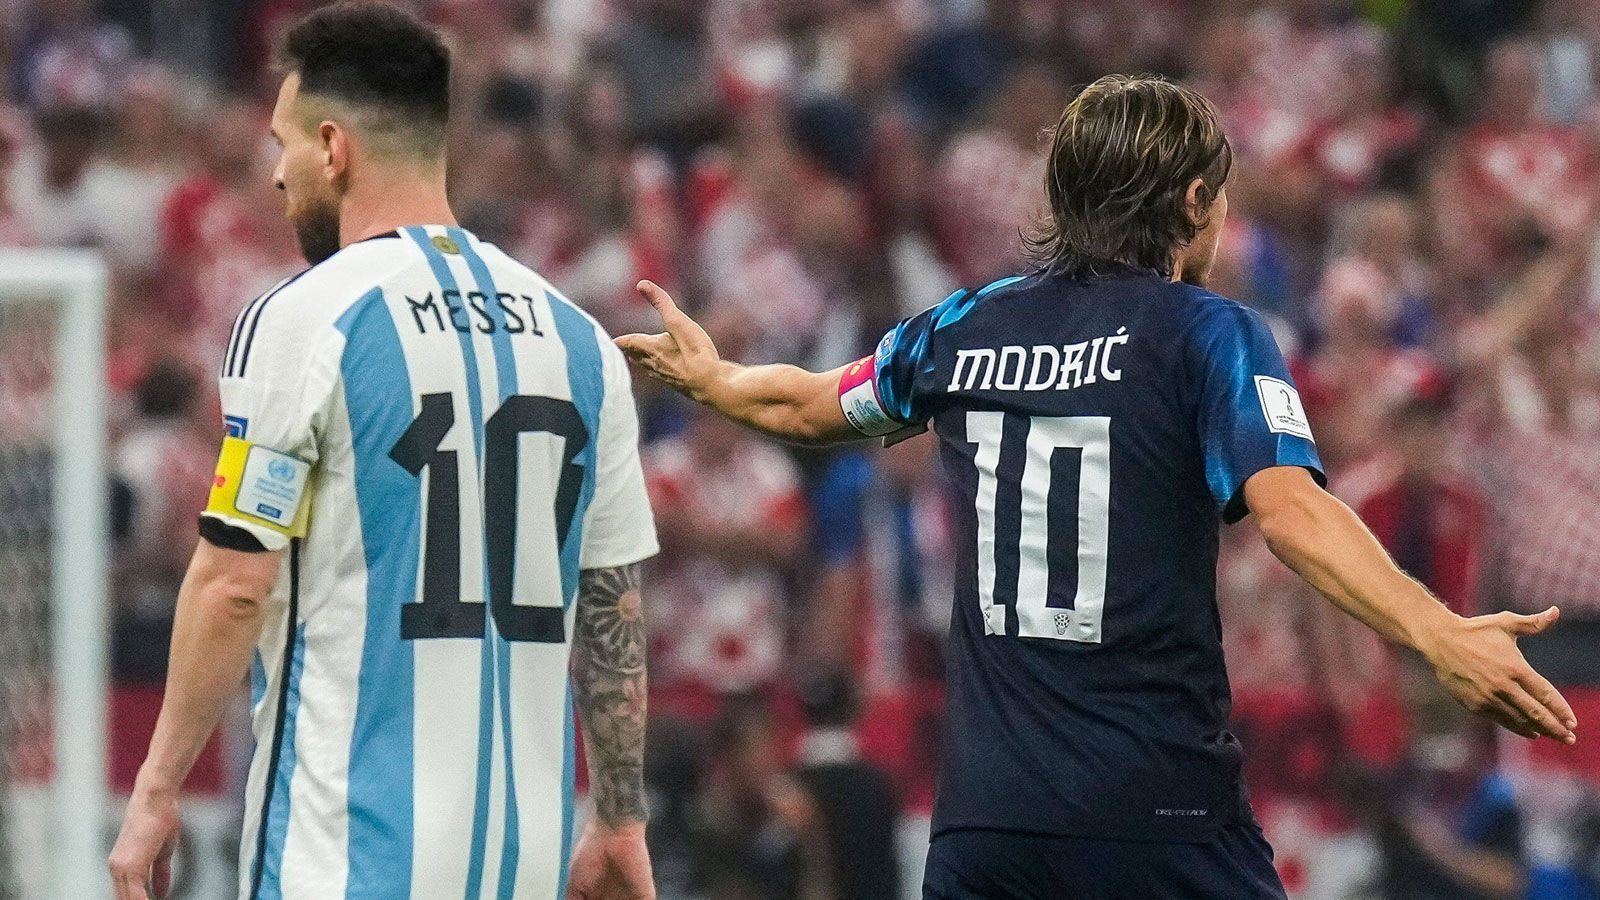 
                <strong>Zwei Weltstars auf Tuchfühlung</strong><br>
                Nur selten kommen sich Messi und Modric so nah wie in diesem Moment. Wobei der Ball deutlich häufiger dort ist, wo Messi ist.
              